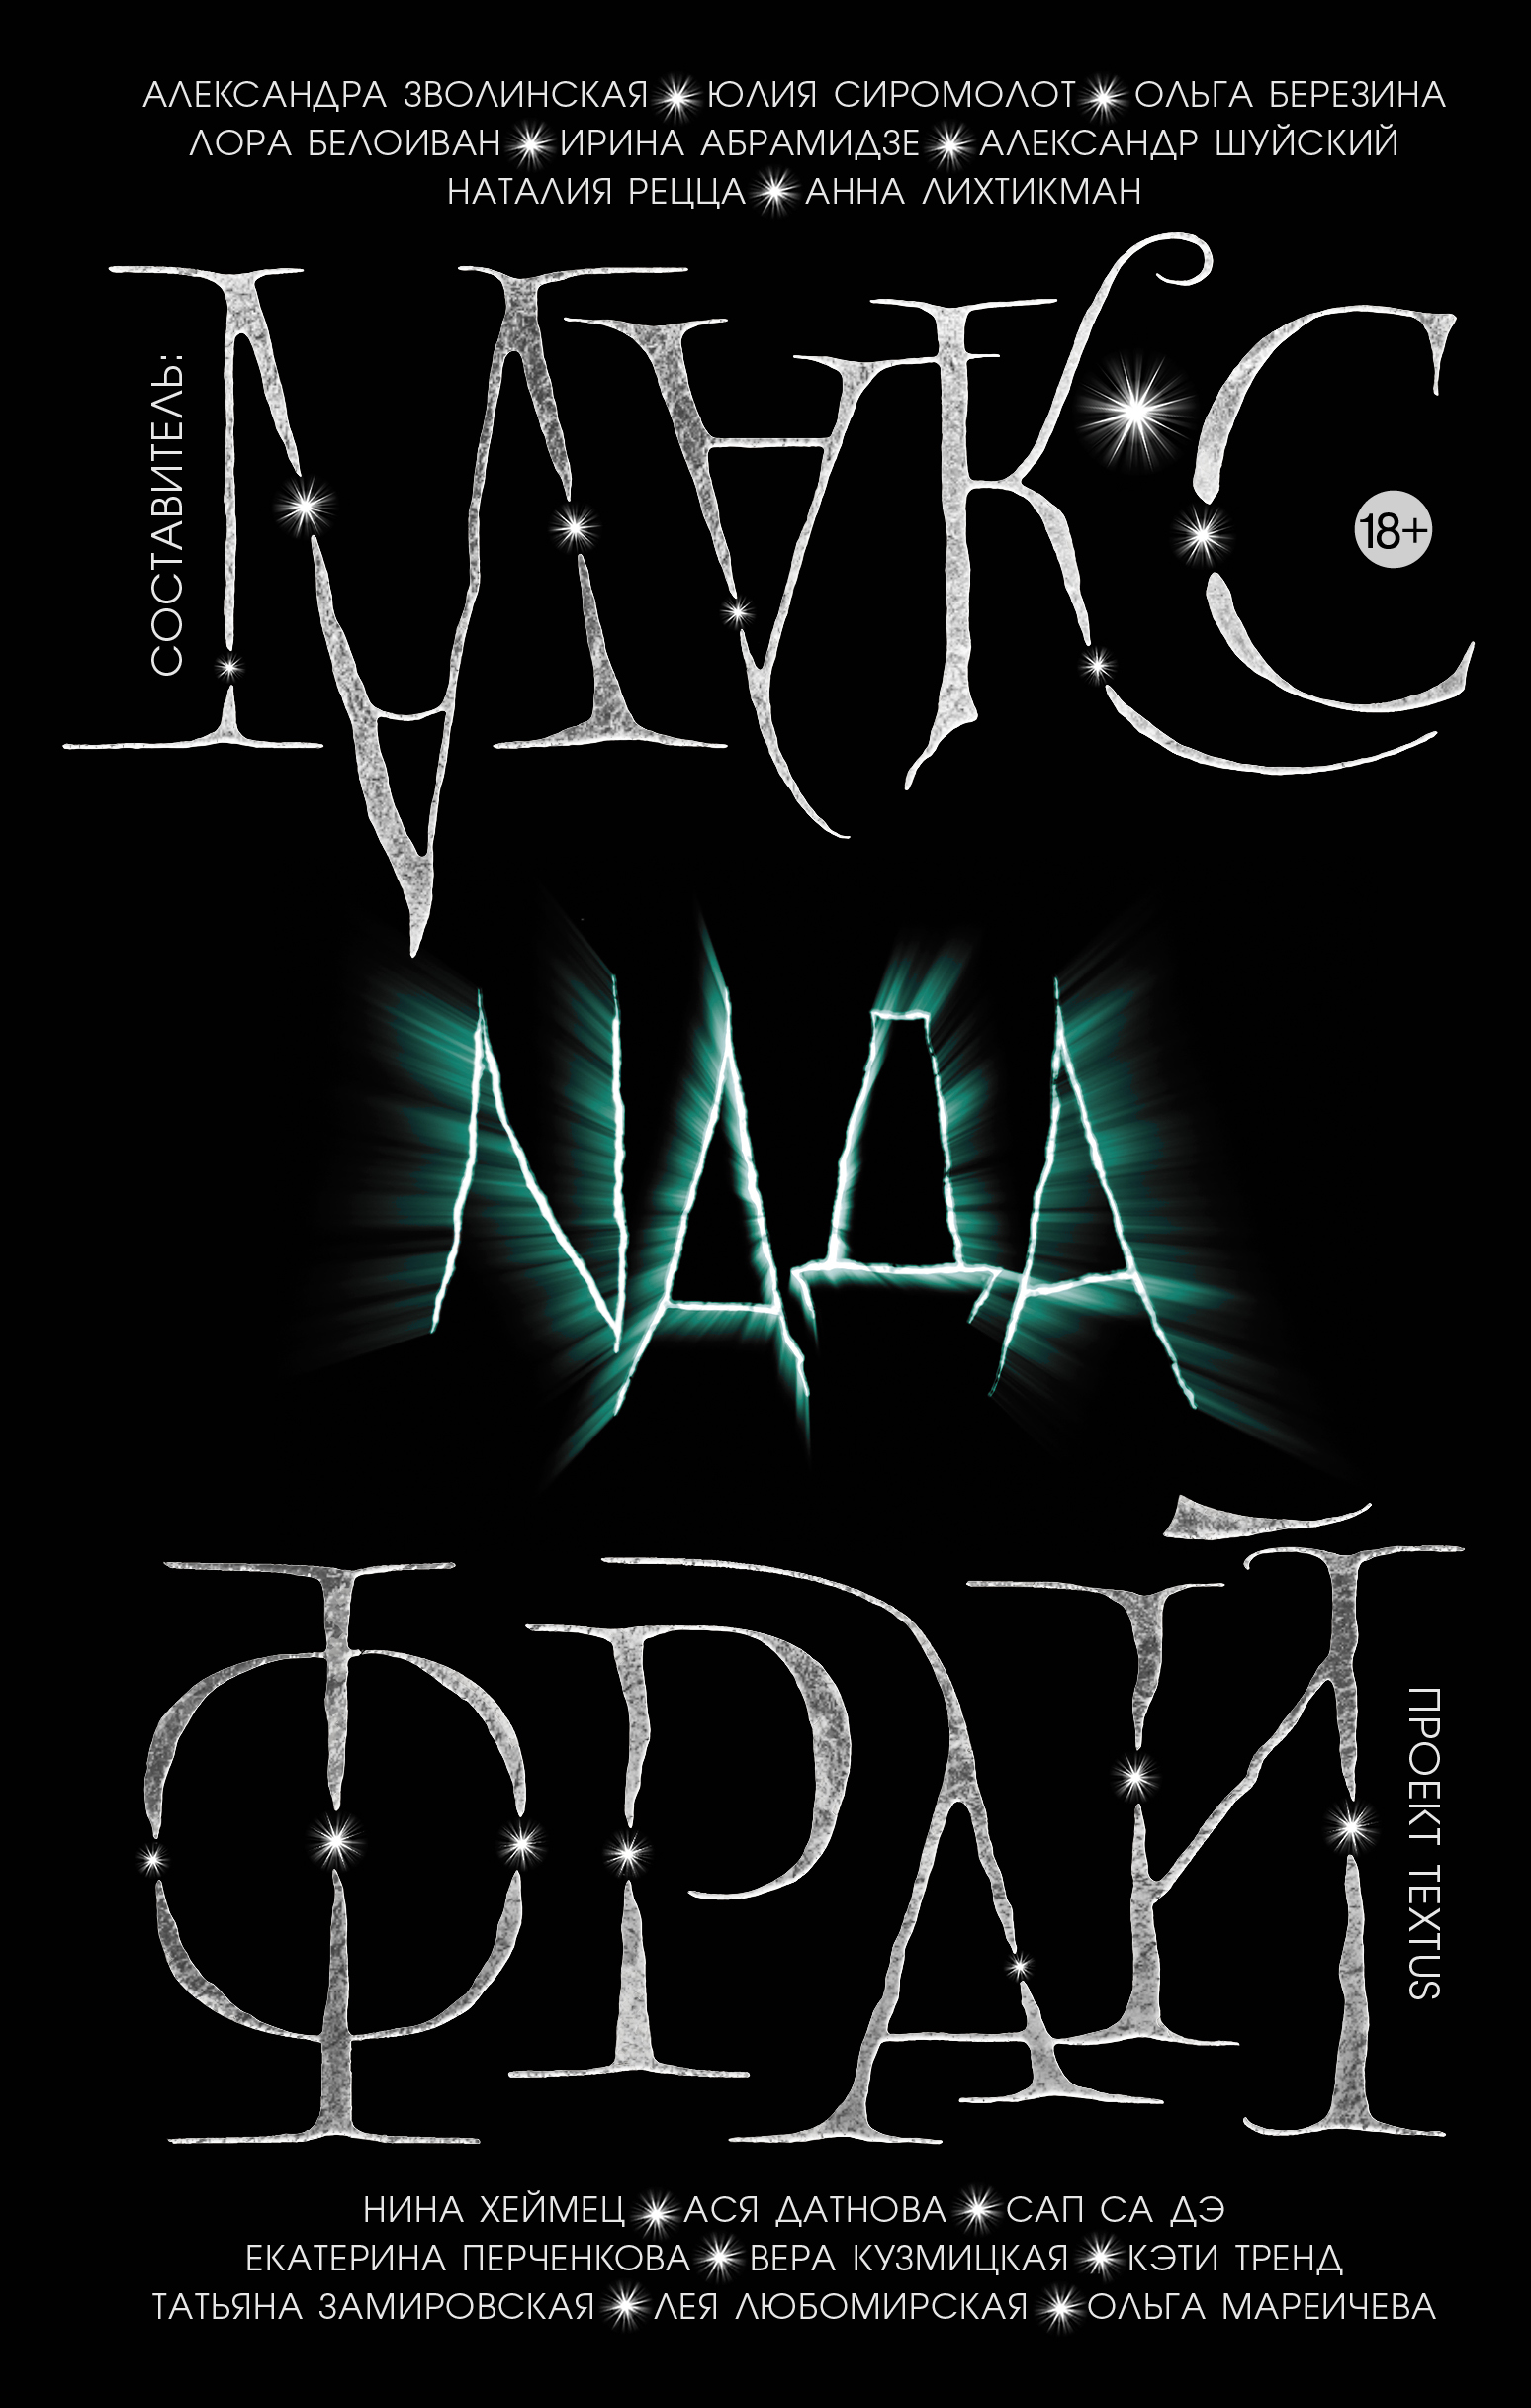 Книга Nada (сборник) из серии Миры Макса Фрая, созданная  Антология, Макс Фрай, может относится к жанру Героическая фантастика, Городское фэнтези. Стоимость электронной книги Nada (сборник) с идентификатором 42339332 составляет 279.00 руб.